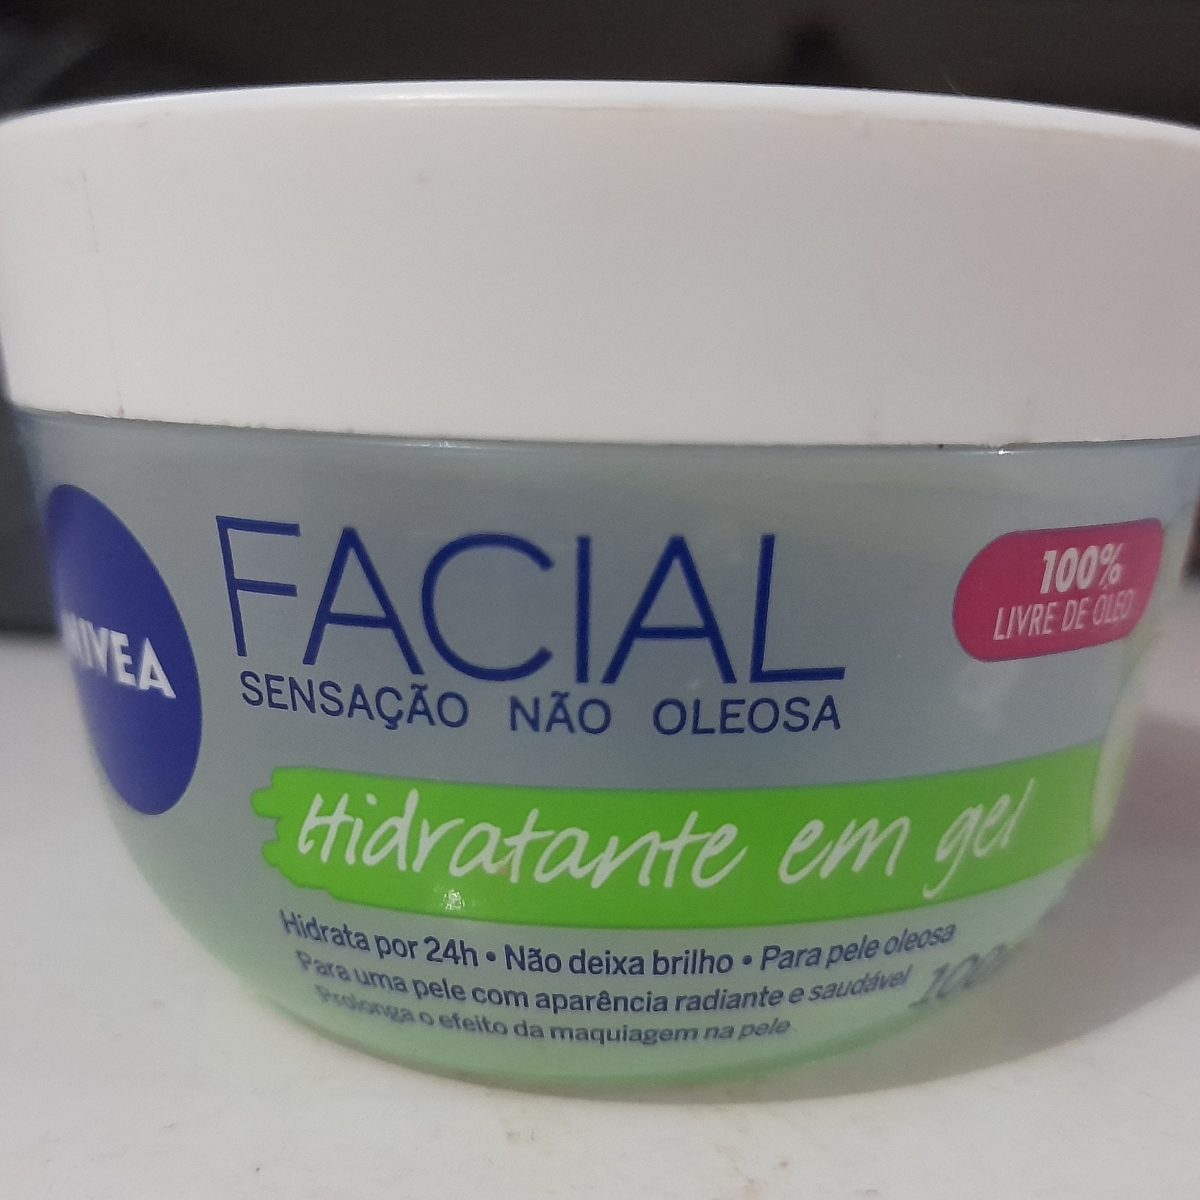 Nivea Facial hidratante em gel Reviews | abillion